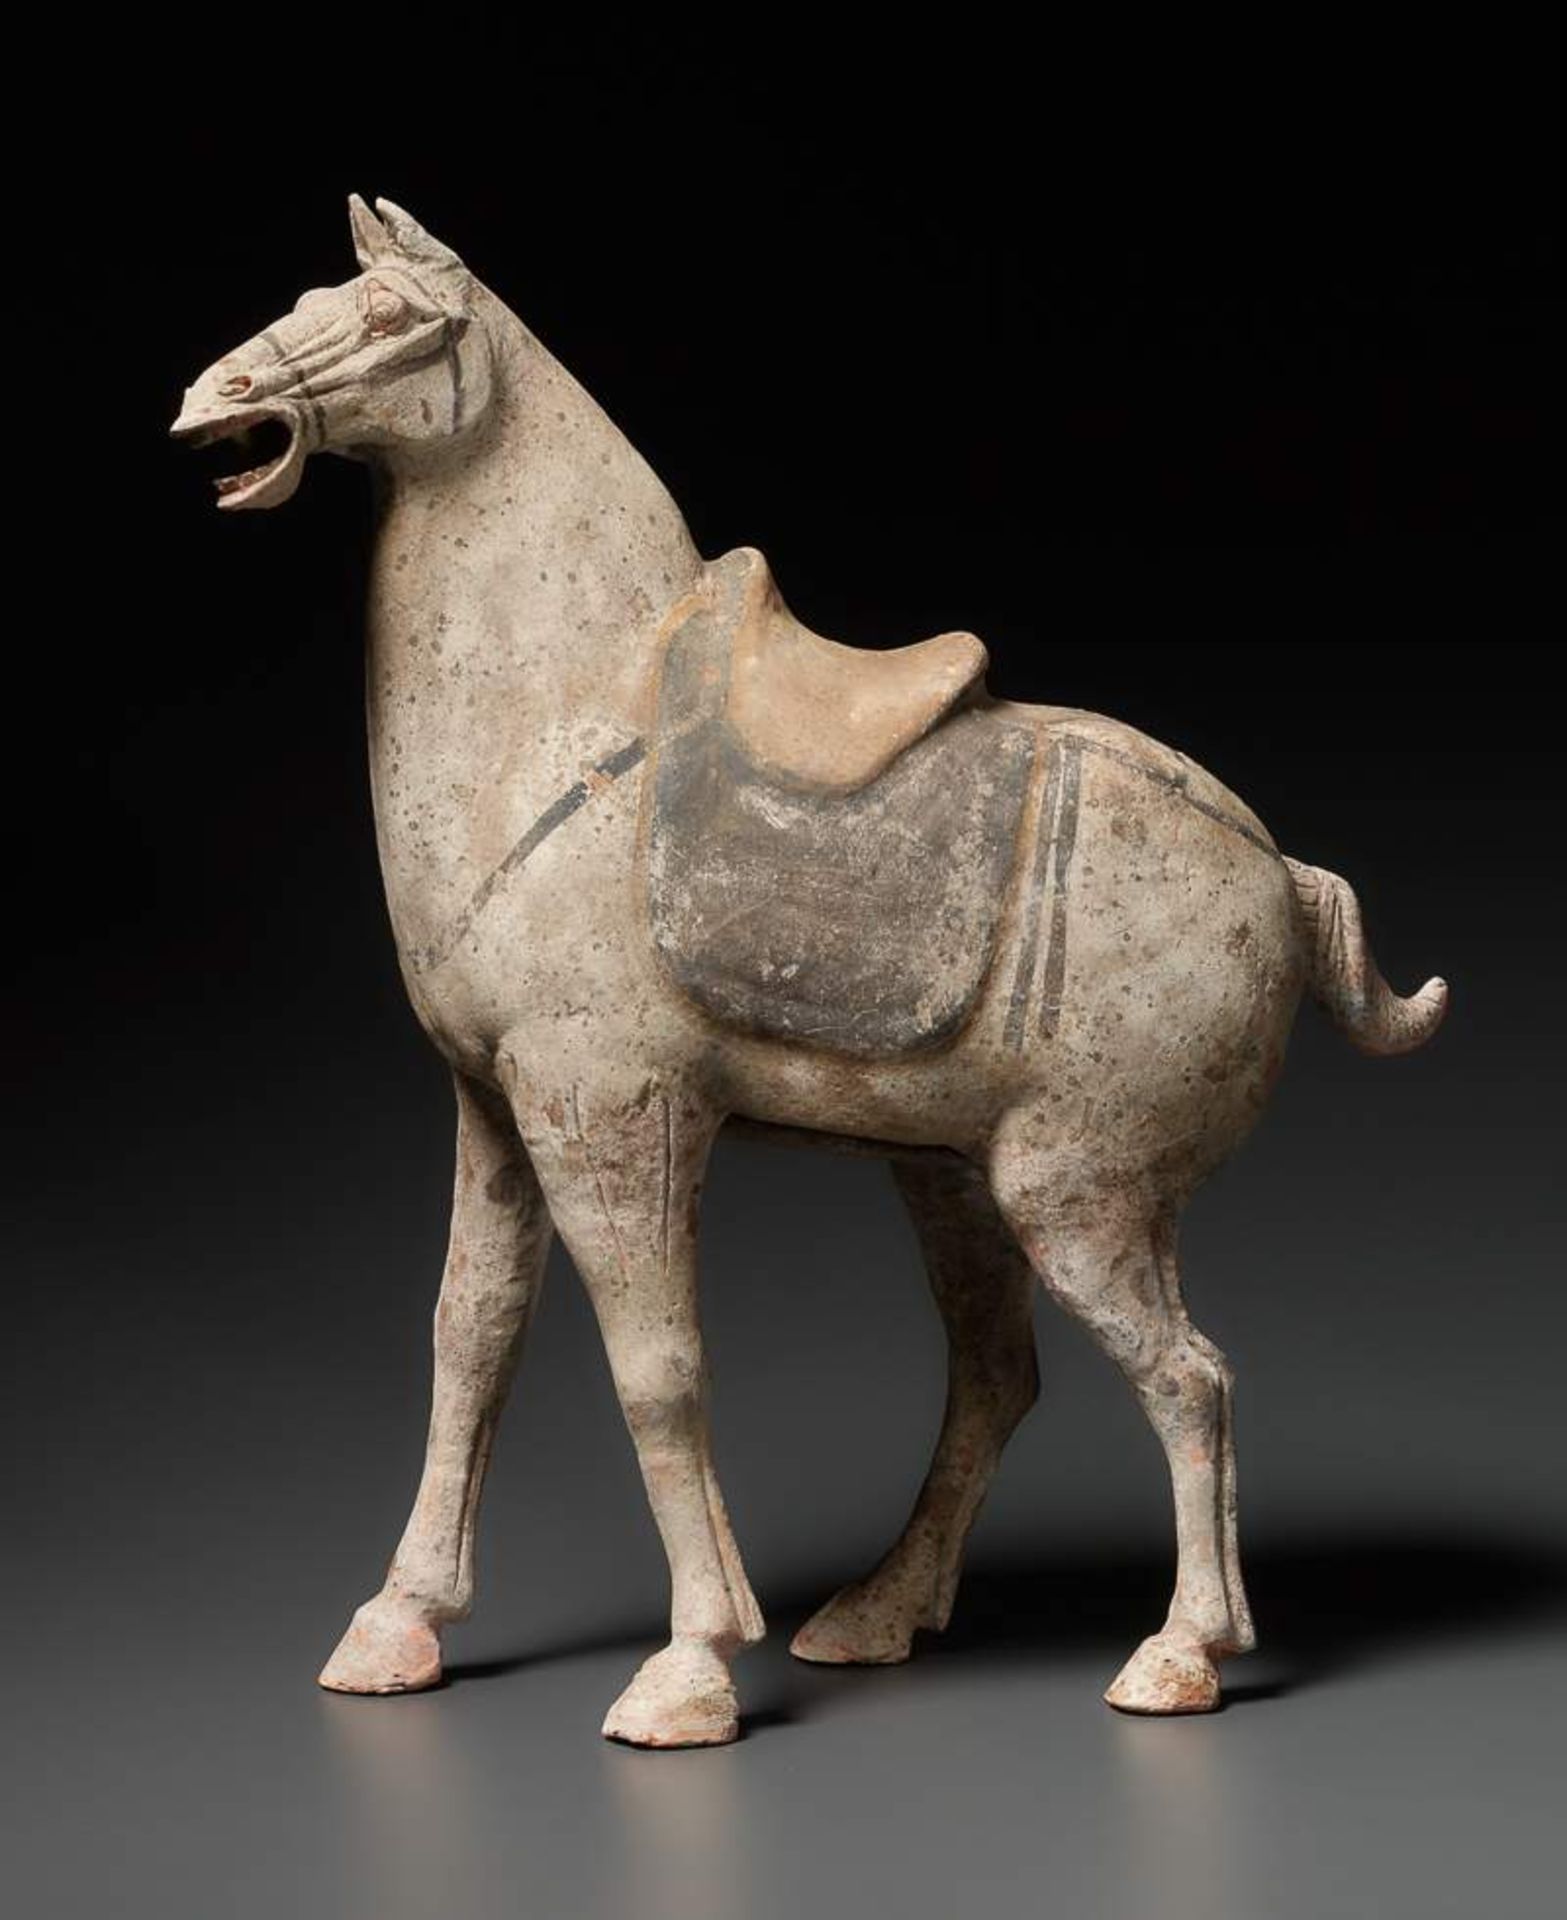 GESATTELTES PFERD Terrakotta mit Bemalung. China, Tang-Dynastie (618 - 905) Dieses Pferd hat einen